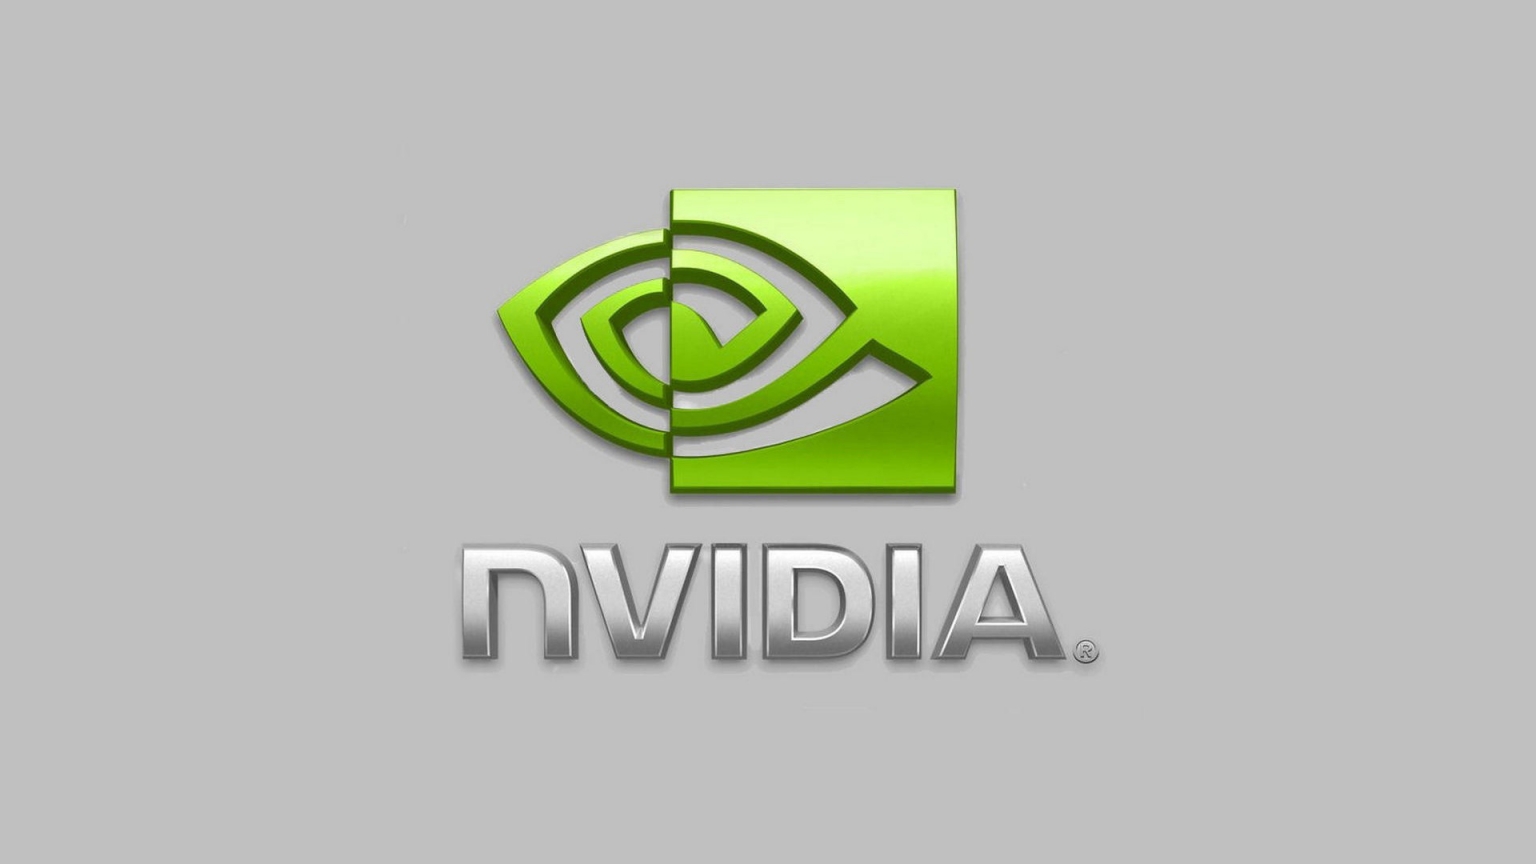 nVIDIA Logo for 1536 x 864 HDTV resolution